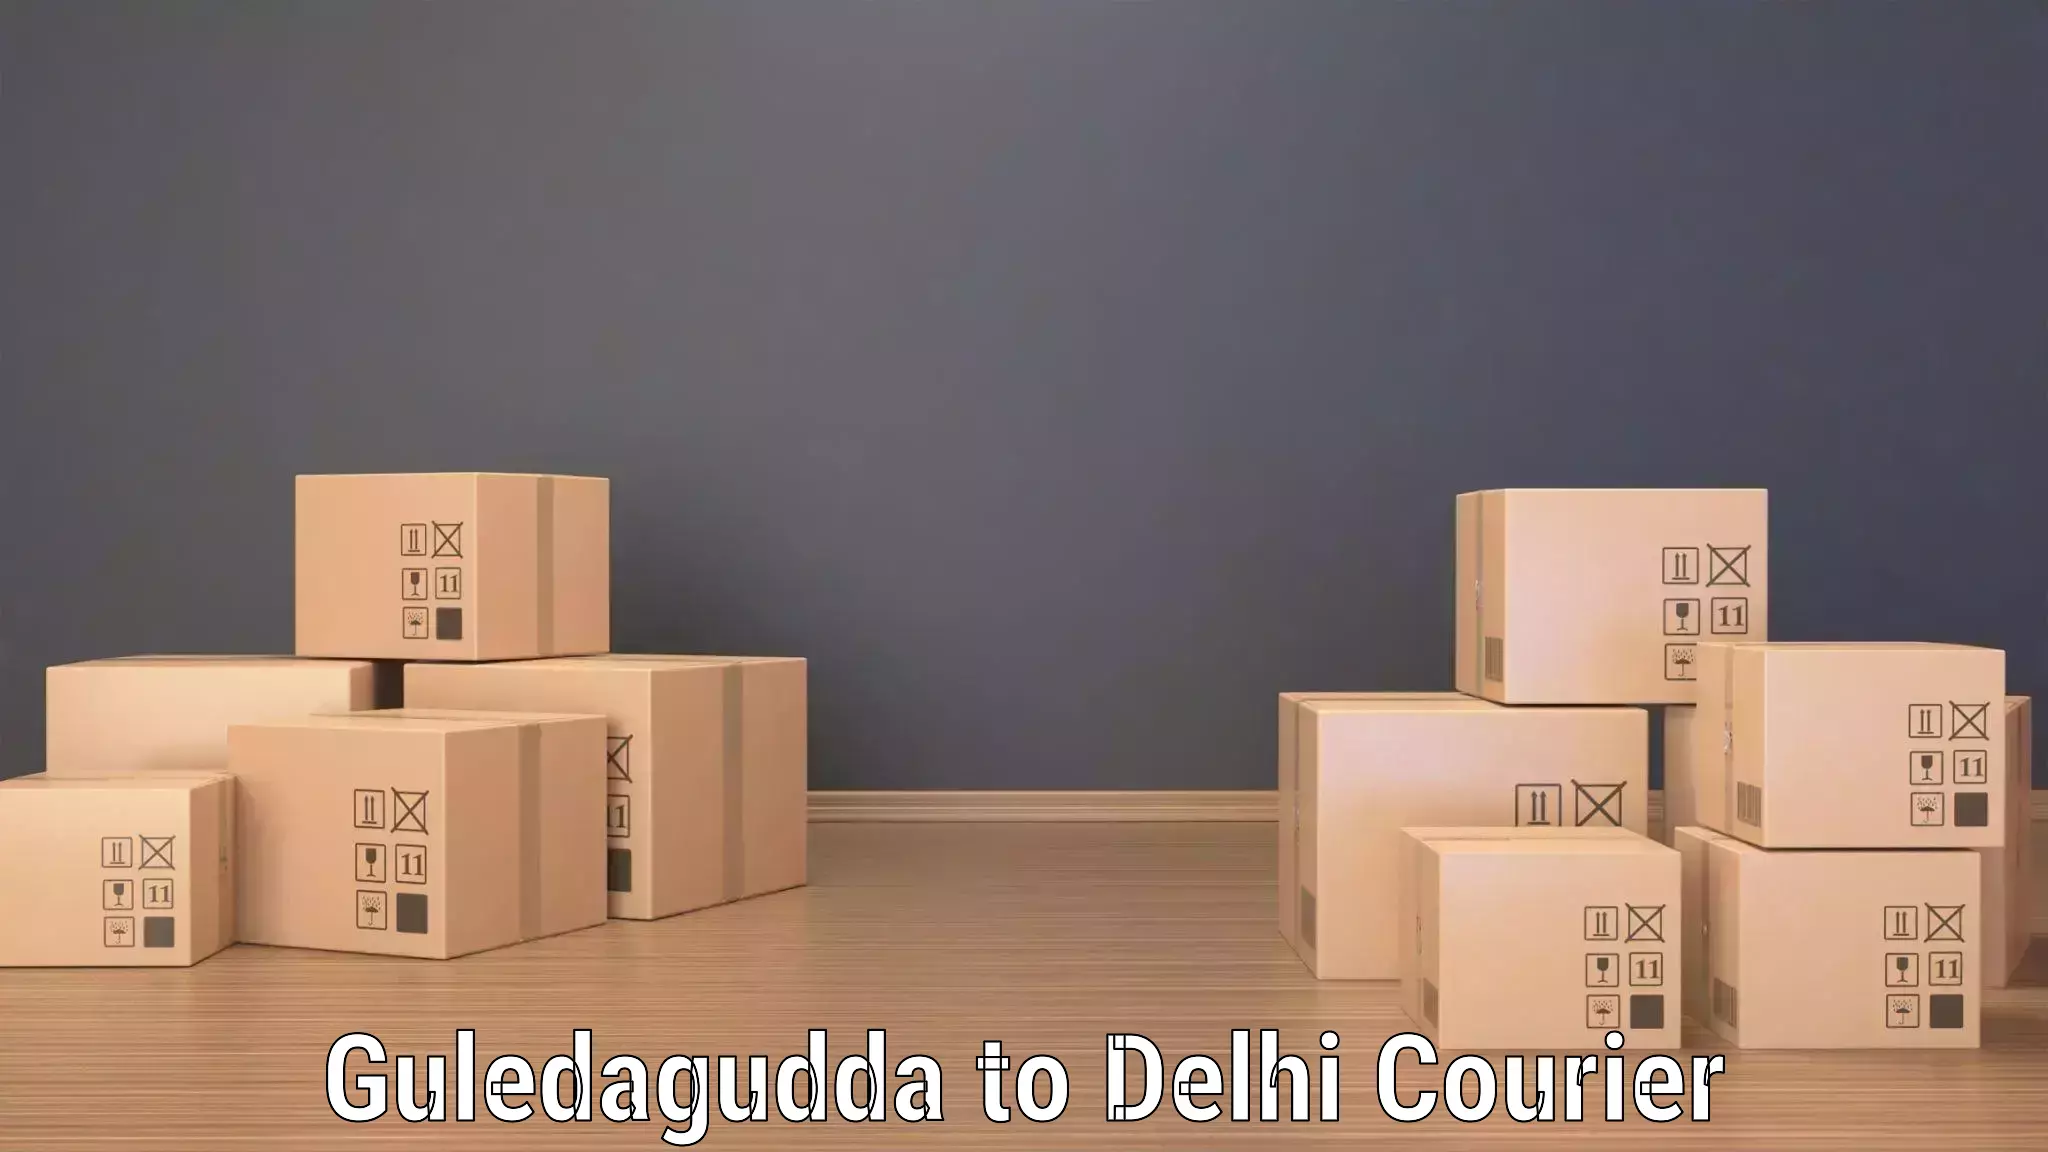 Regular parcel service Guledagudda to NIT Delhi